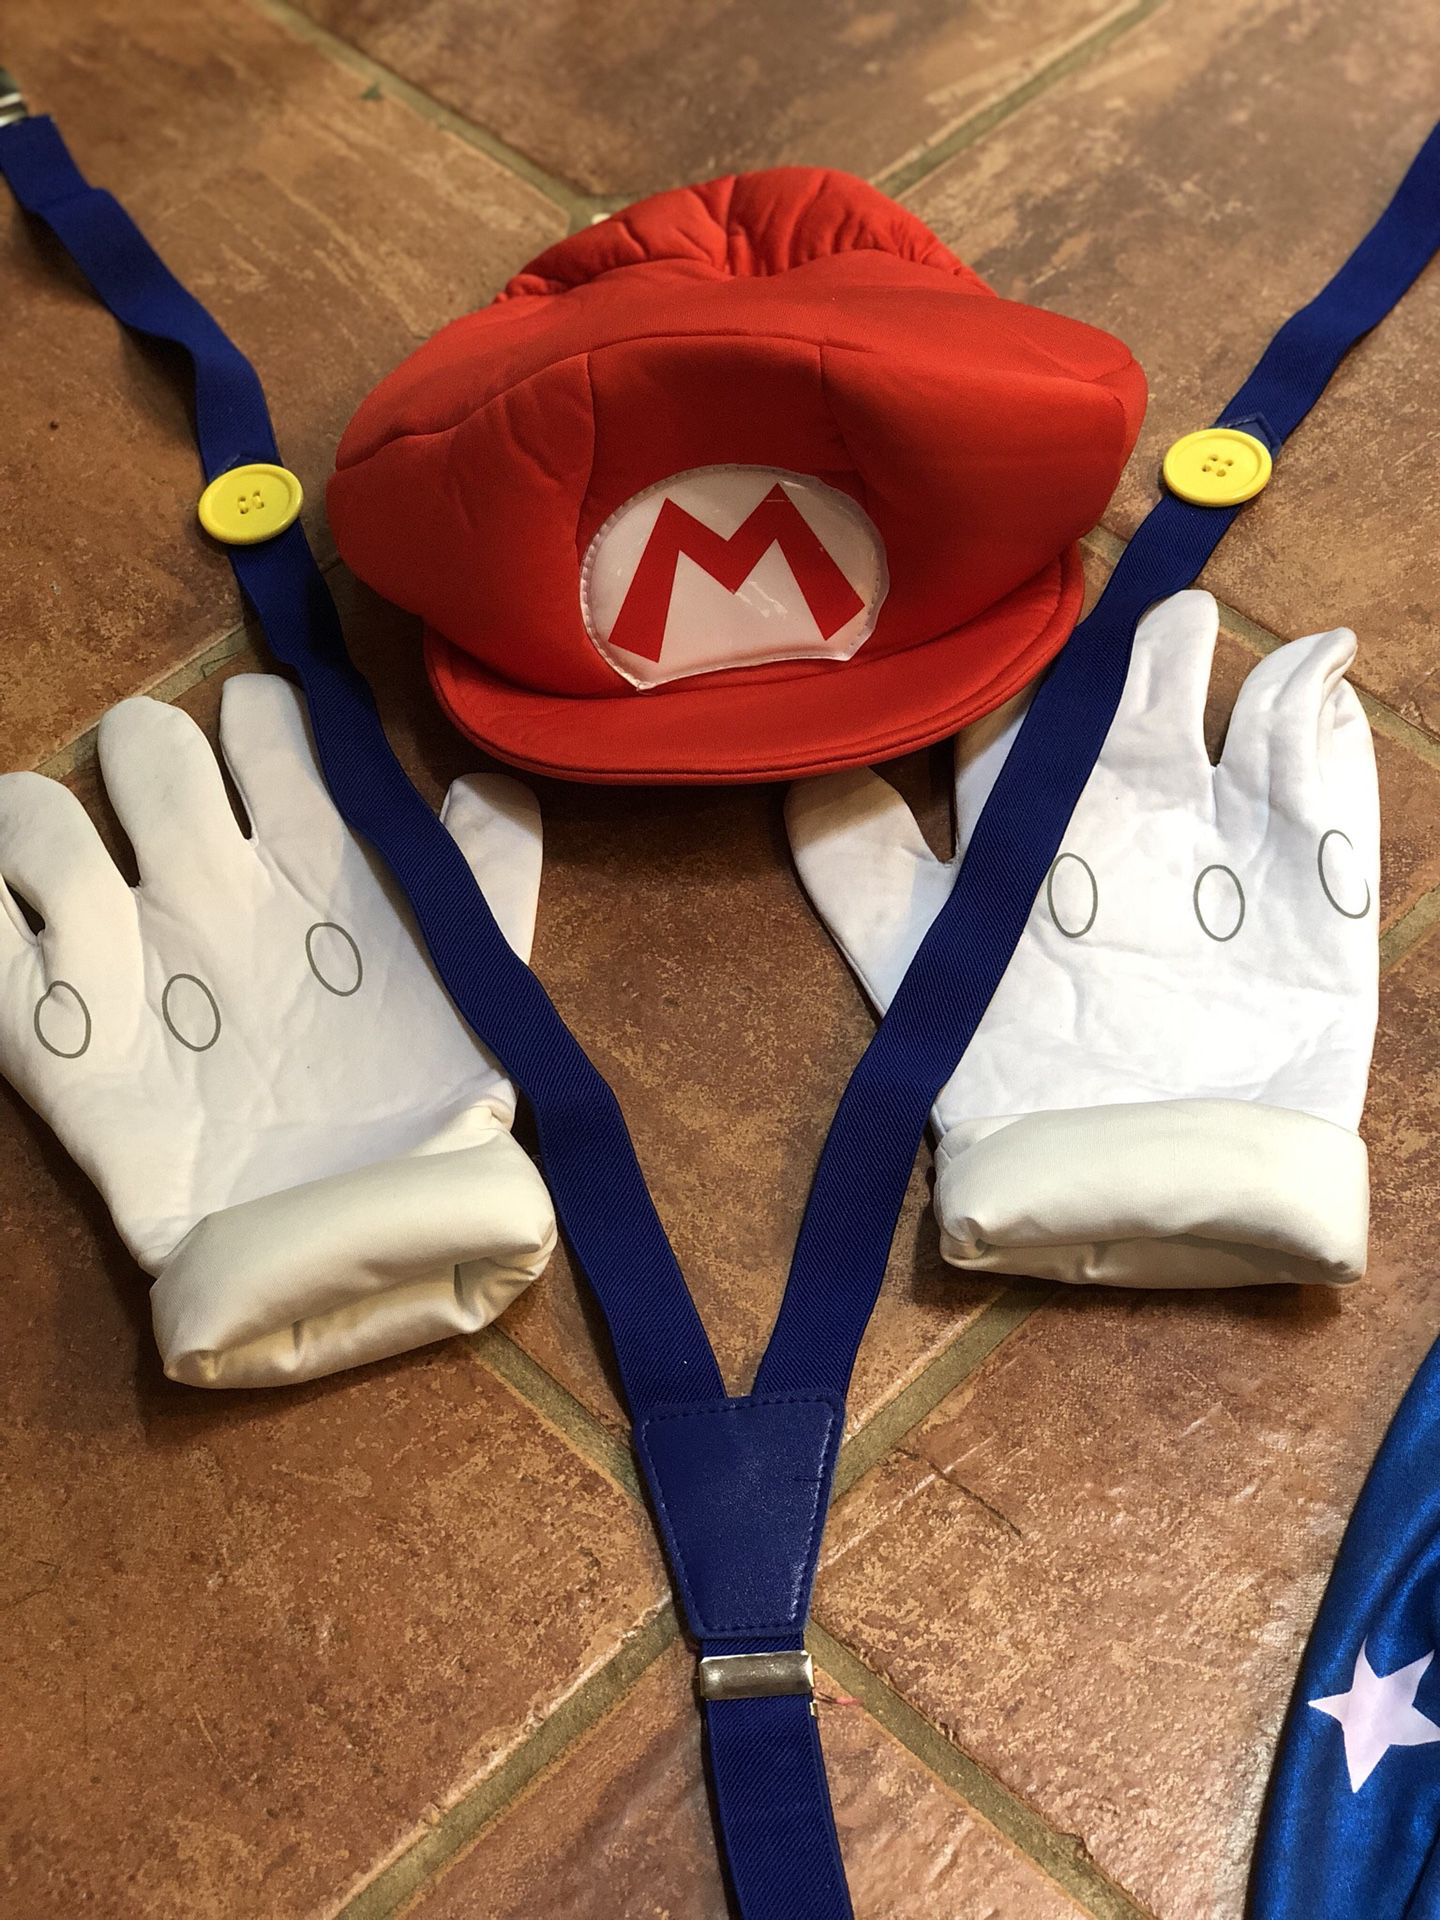 Super Mario costume items